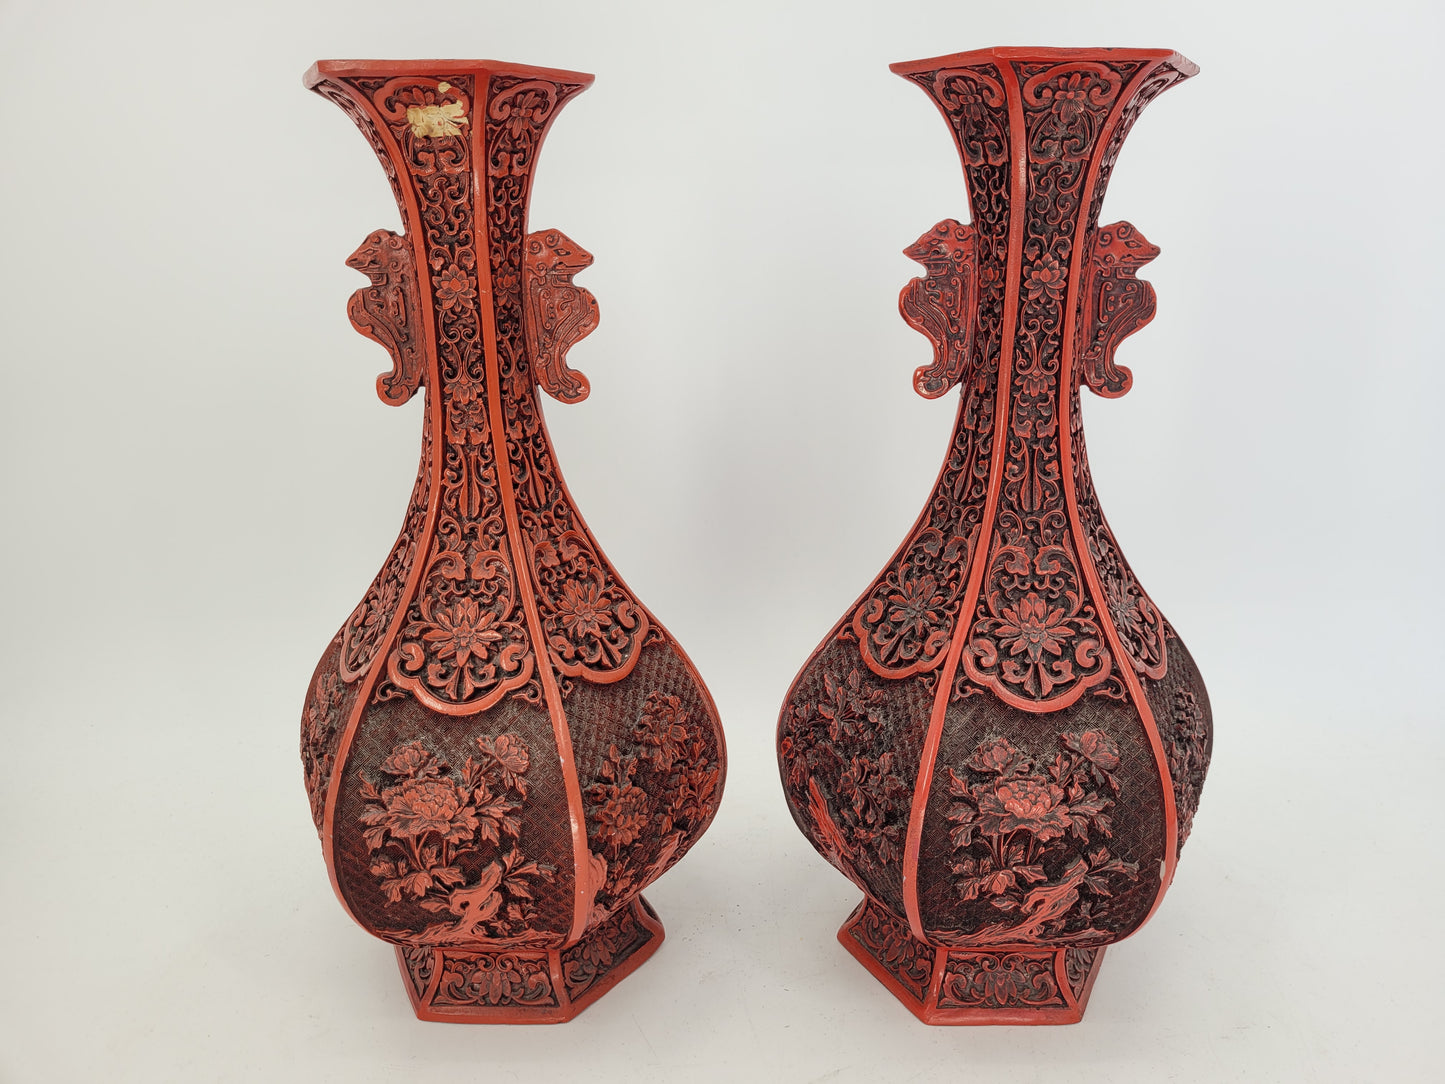 Zwei chinesische Vasen mit Cinnabar Lack Handgeschnitzt